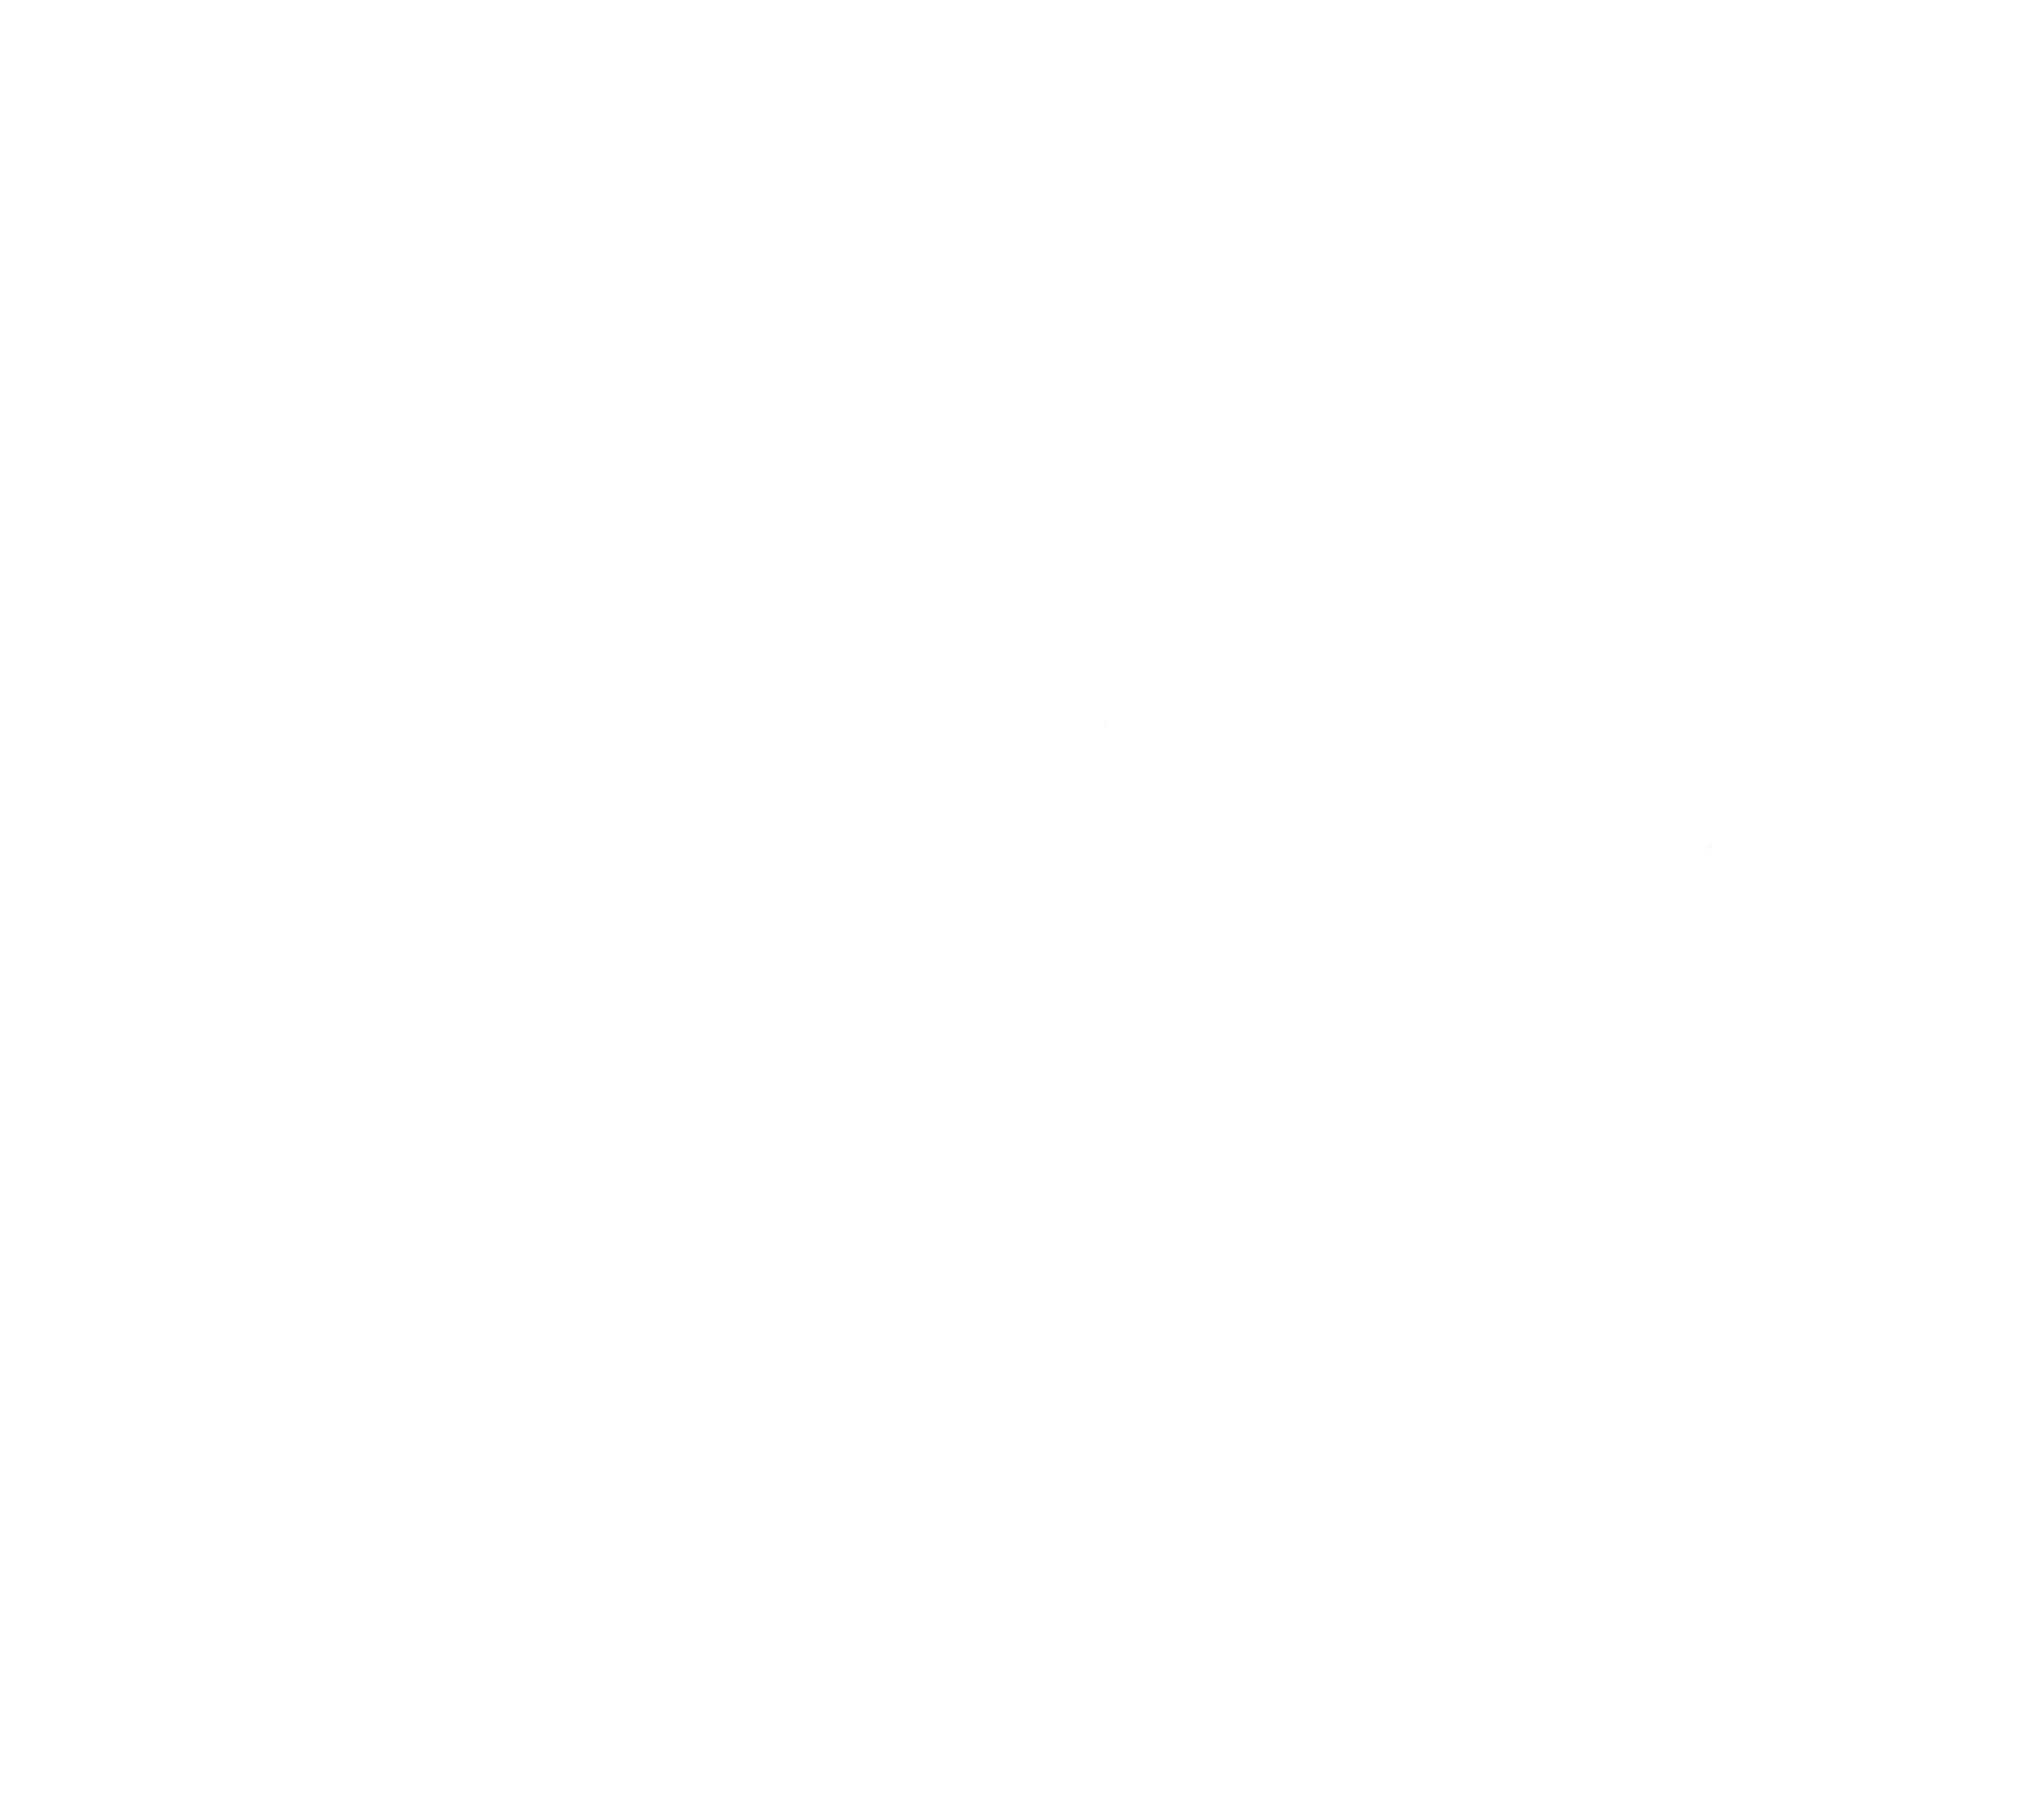 ICTV Reports